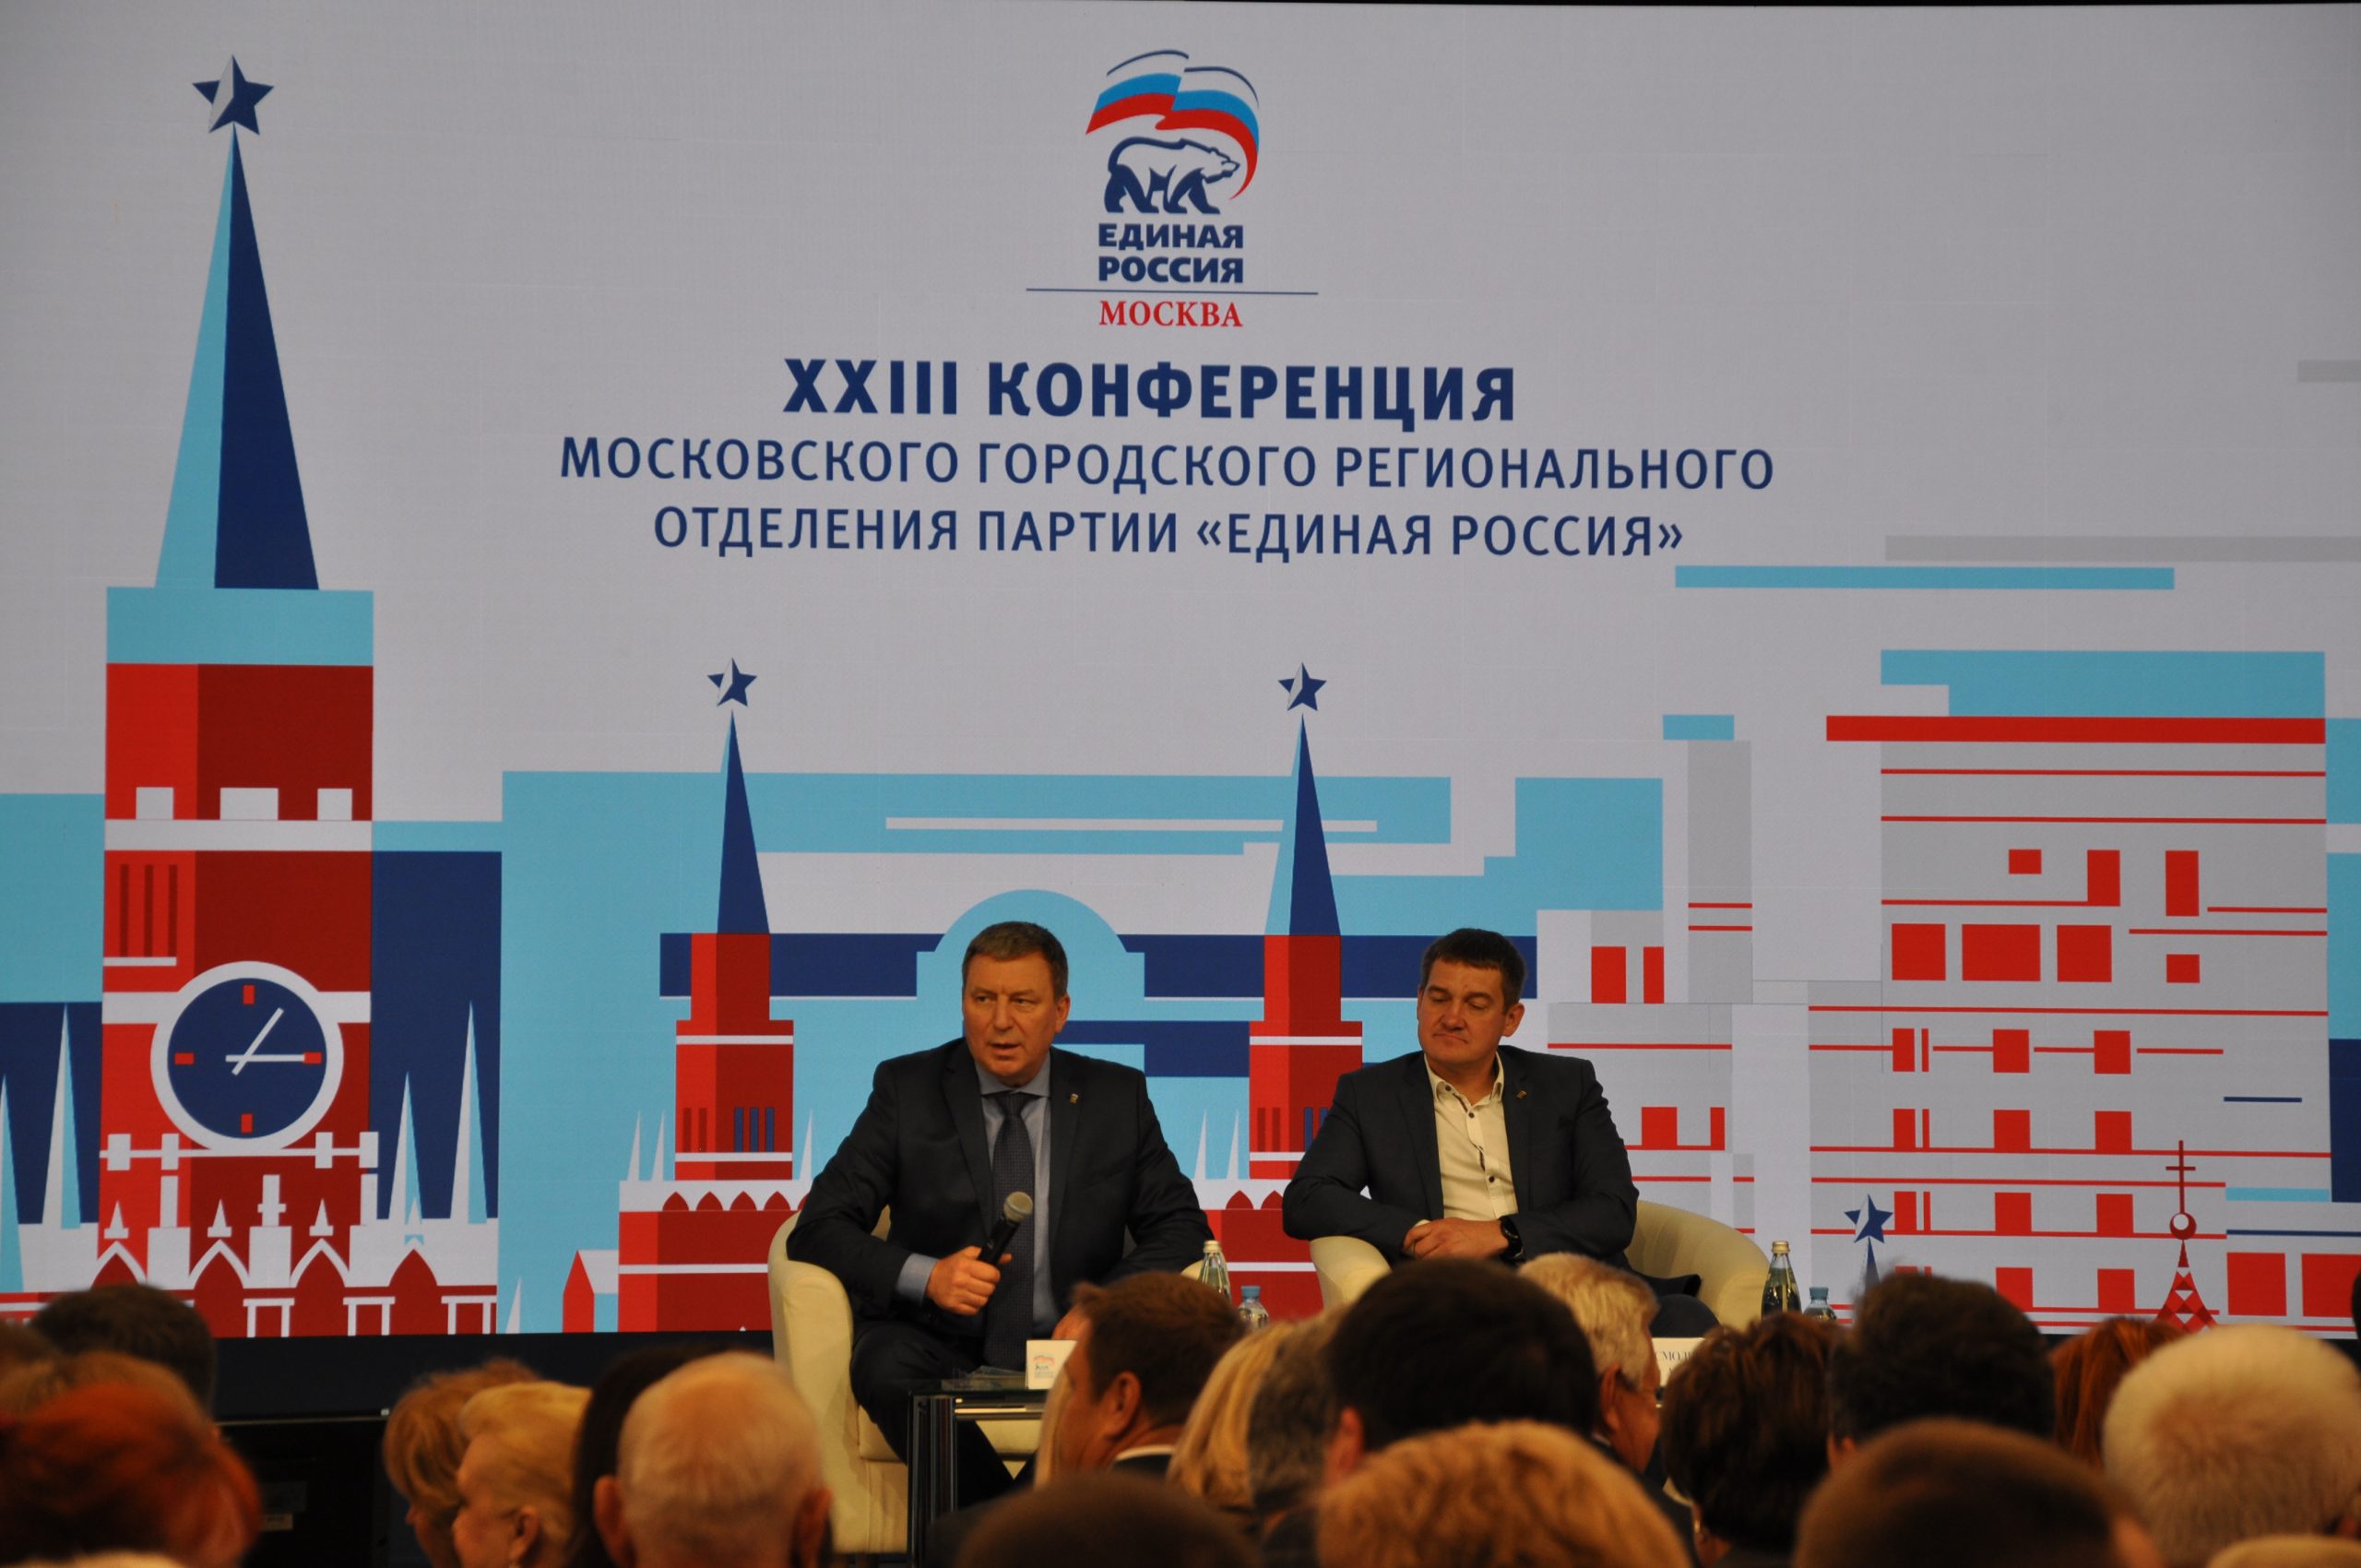 Партия «Единая Россия» проведет широкое обсуждение предвыборной программы с жителями регионов и экспертами